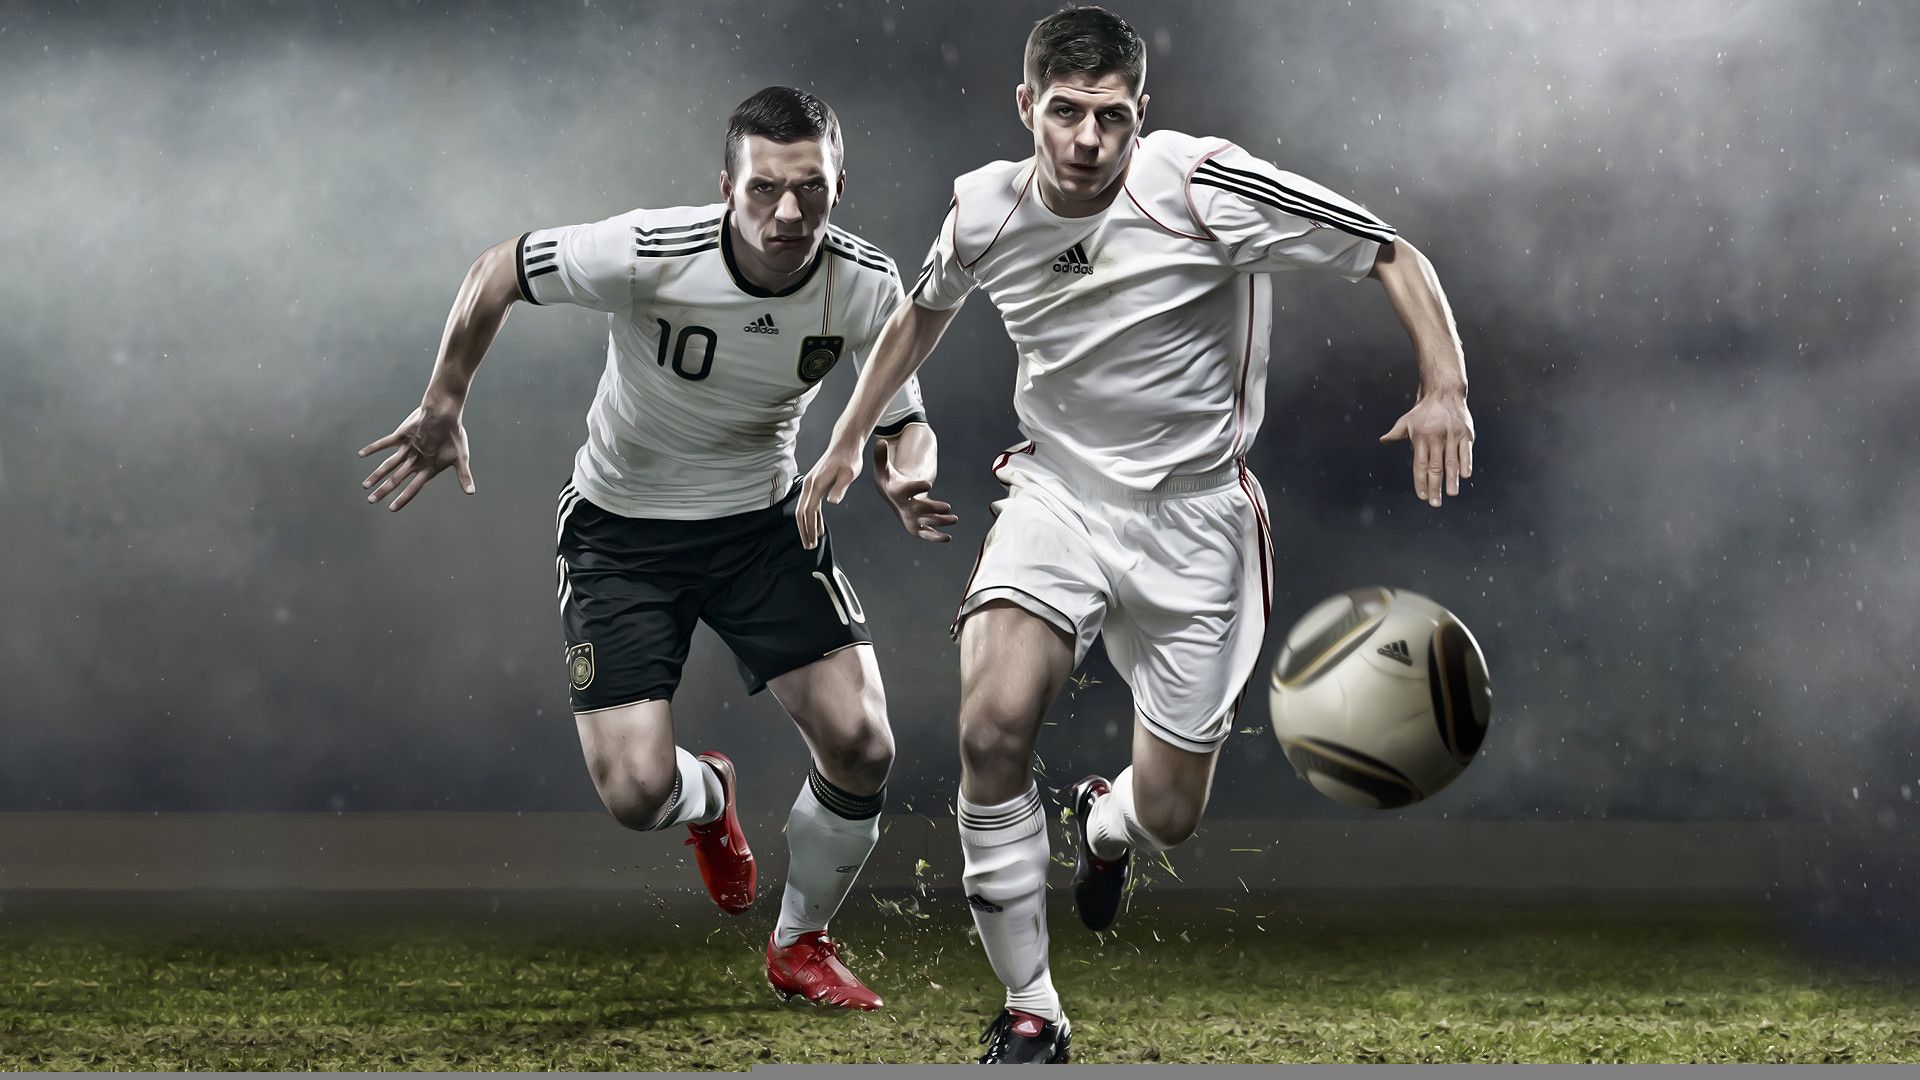 fondo de pantalla de fútbol,deportes,jugador de fútbol,jugador de fútbol,fútbol americano,fútbol